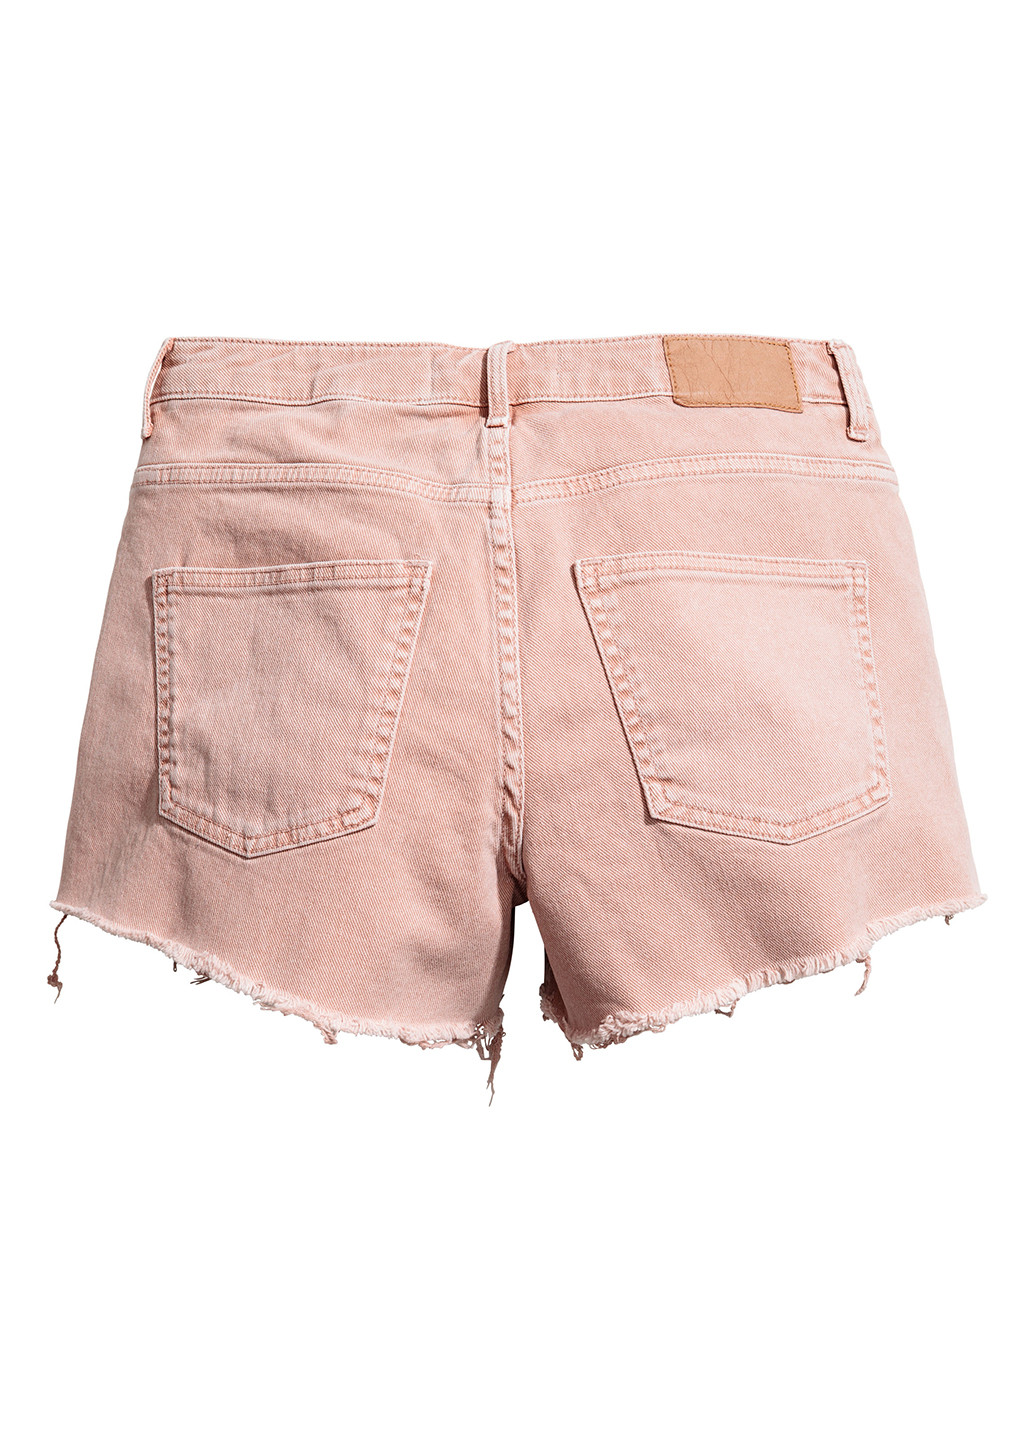 Шорты H&M однотонные светло-розовые джинсовые